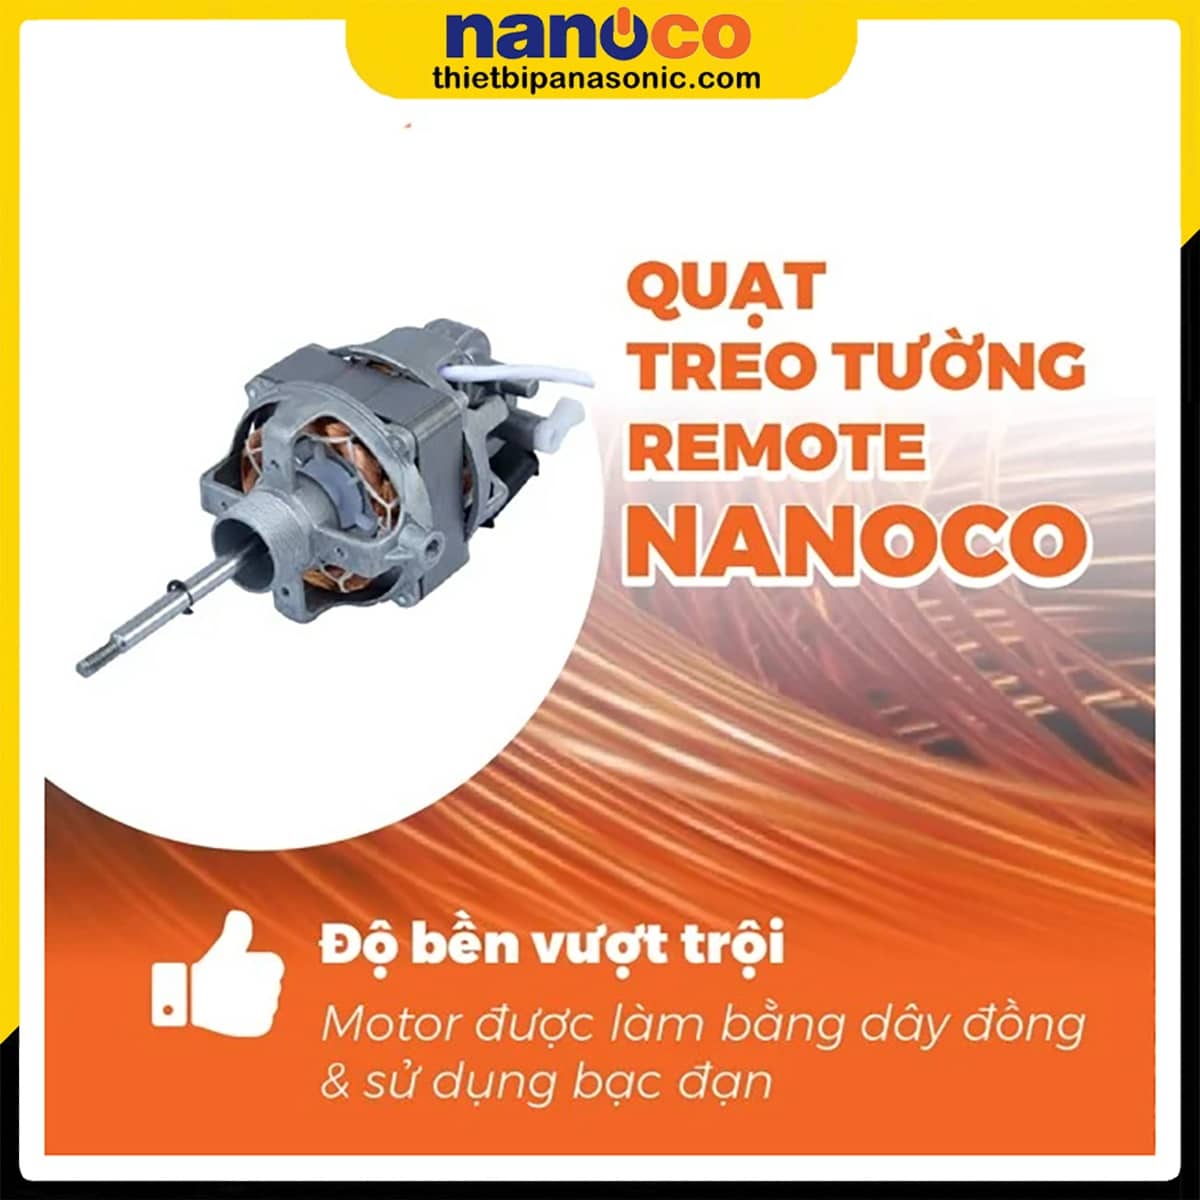 Quạt treo tường Nanoco NWF1610RC-BL có độ bền vượt trội nhờ sử dụng động cơ dây đồng và bạc đạn (vòng bi)